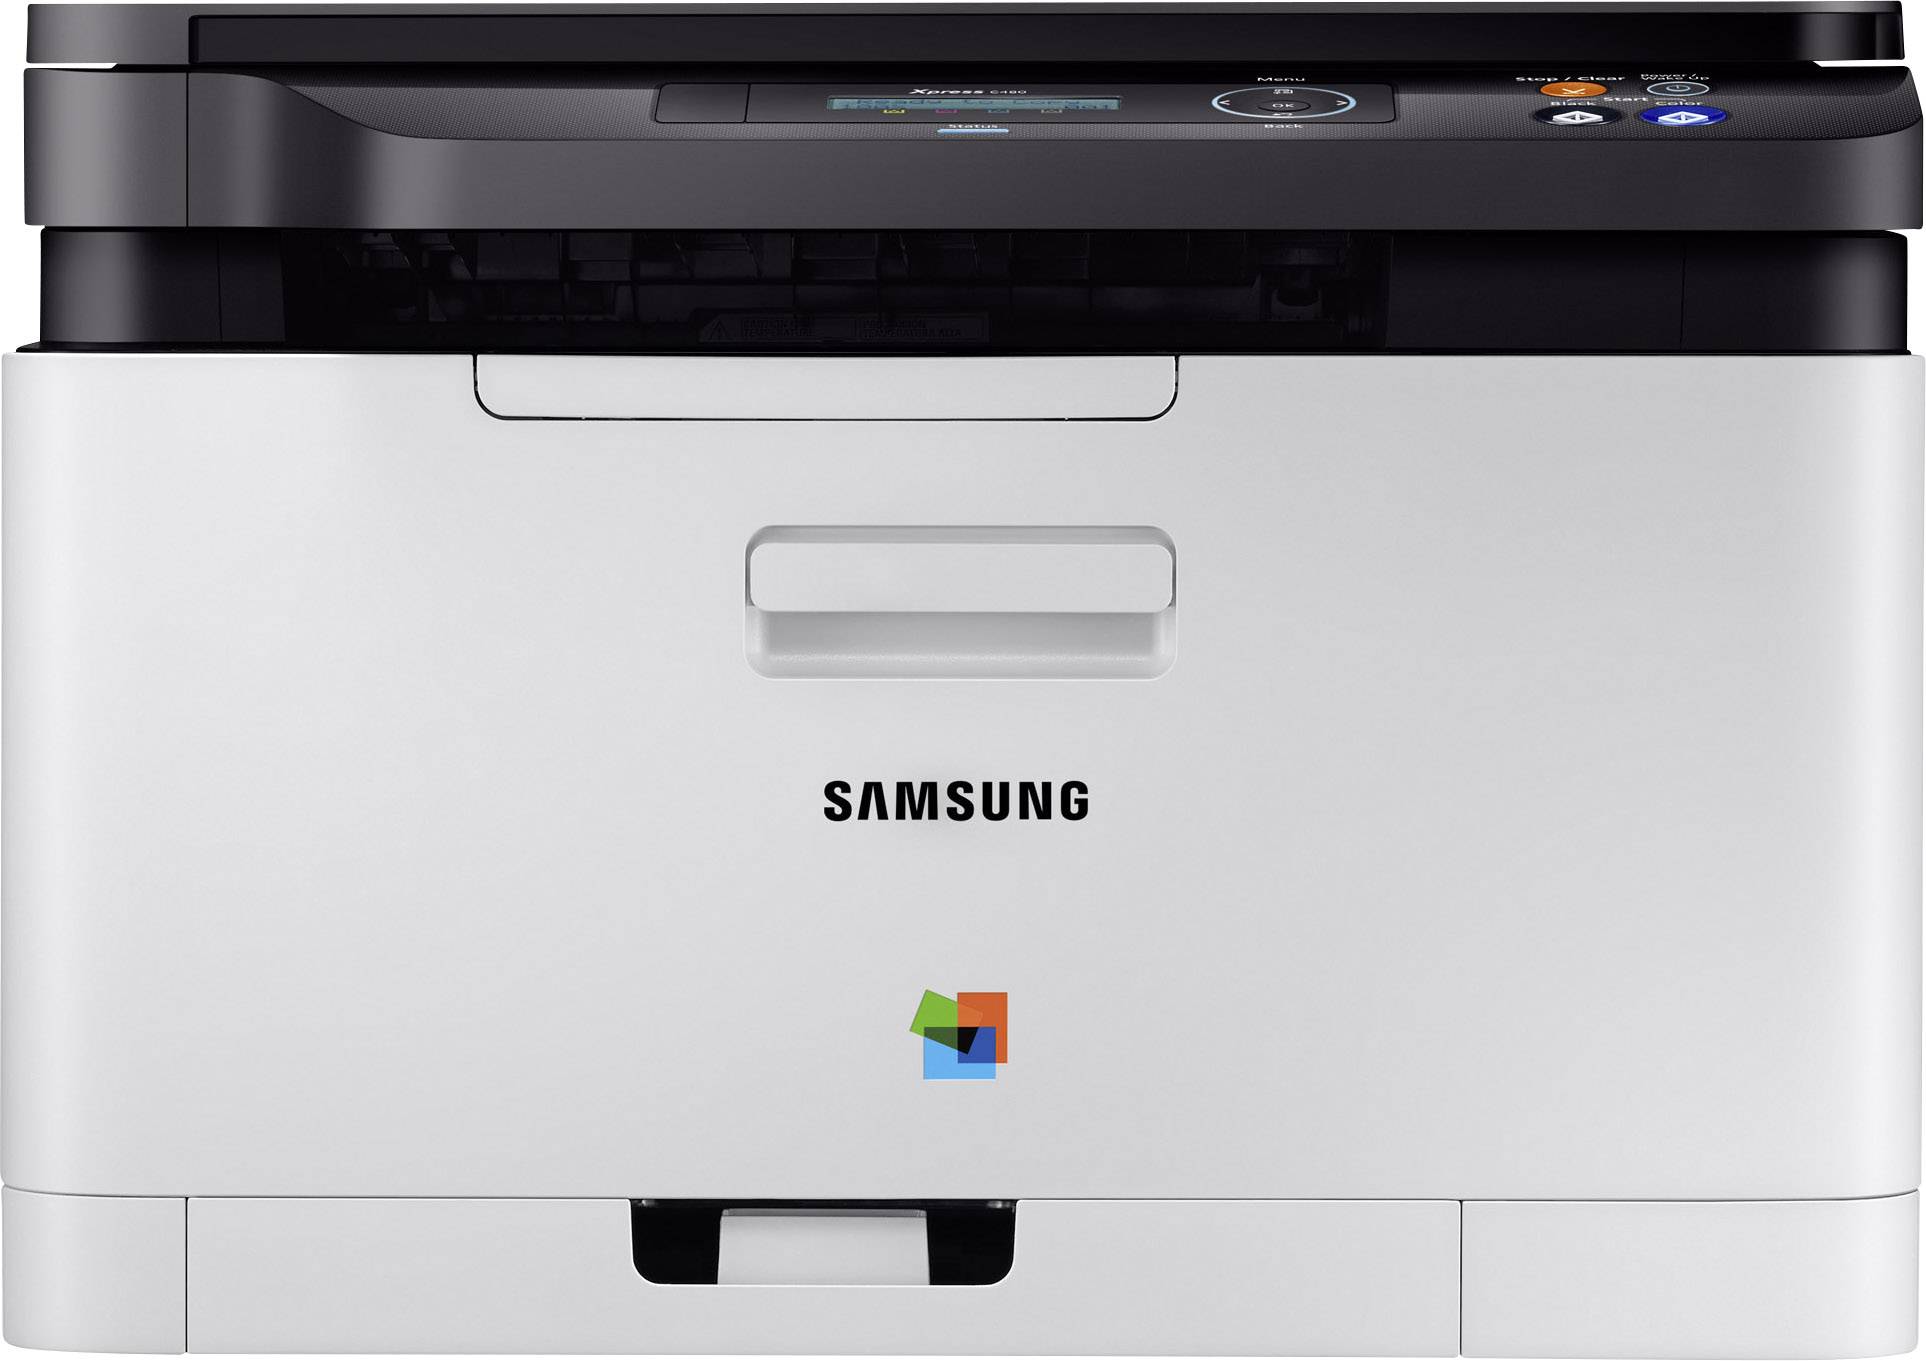 samsung monochrome laser printer scx-3405w